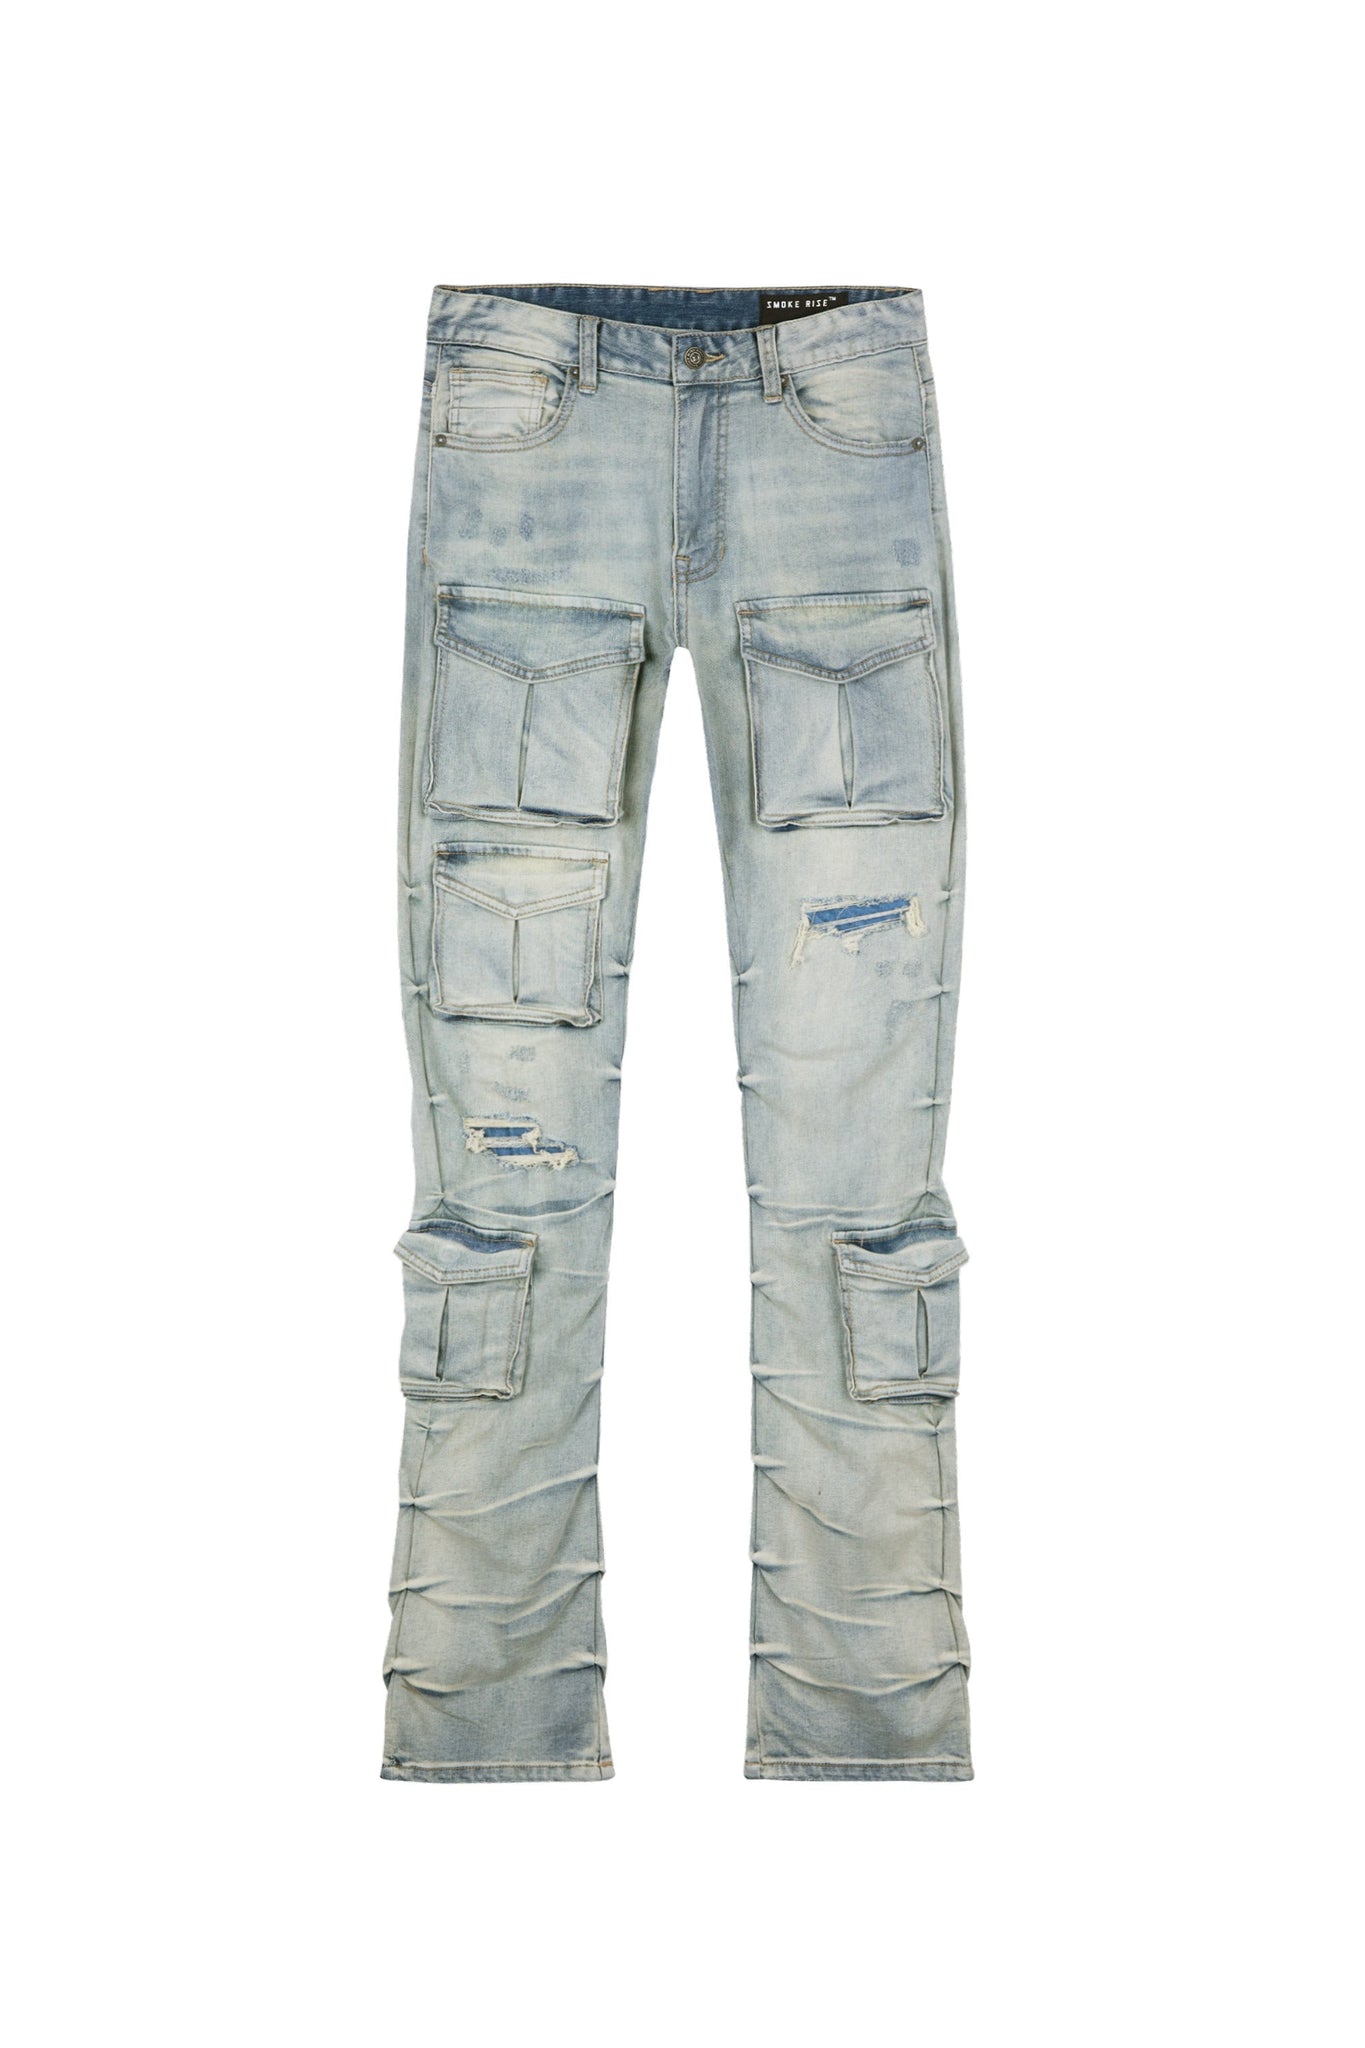 Smoke Rise - Utility Pocket Stacked Jeans (Union Grey) – Octane